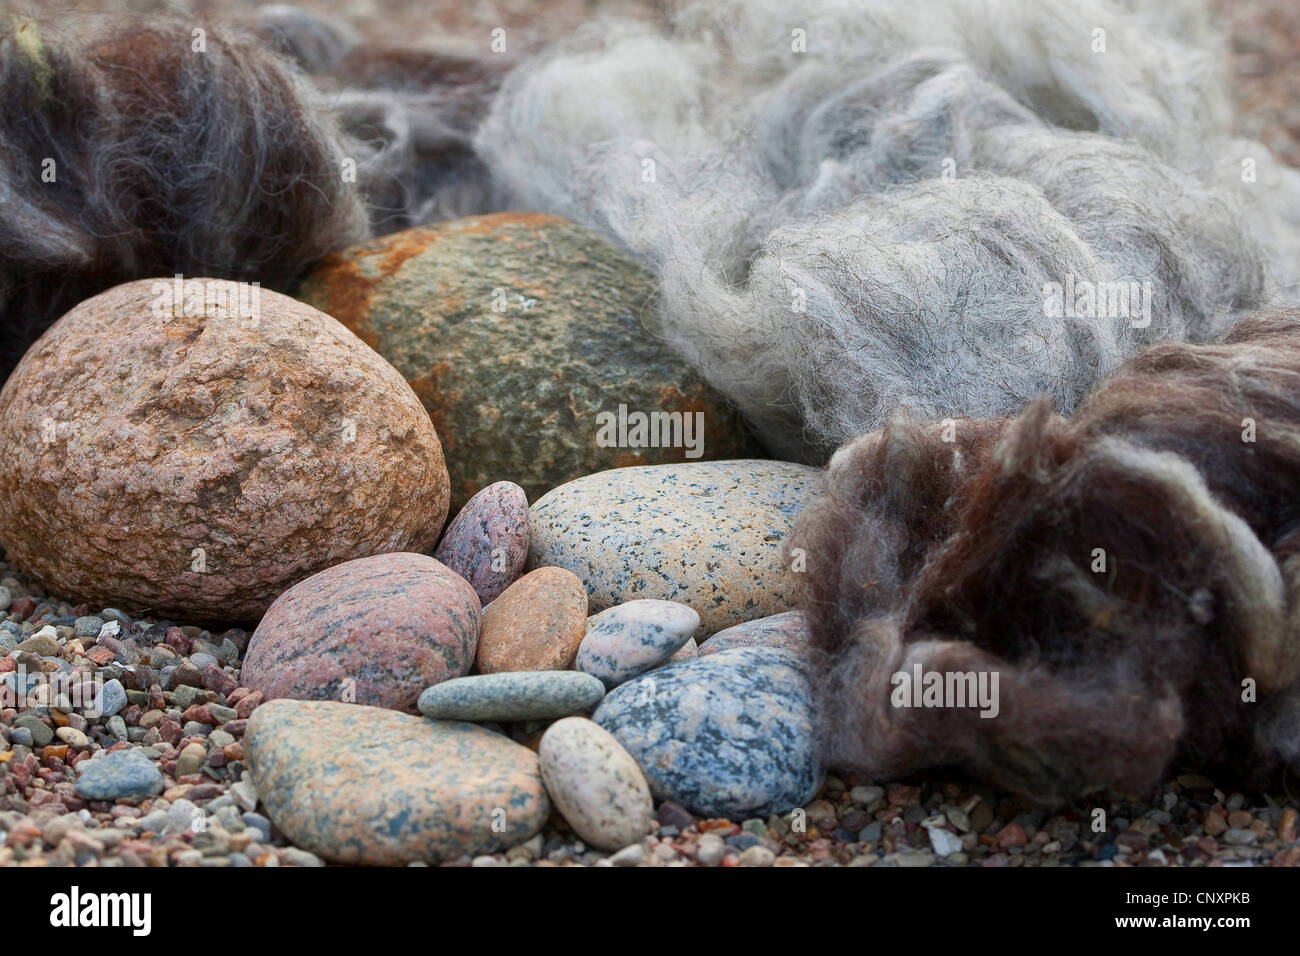 "Fieltro trolls de piedra' que sirve como decoración de jardines: piedras naturales están equipados con tapas de fieltro de lana, Alemania Foto de stock